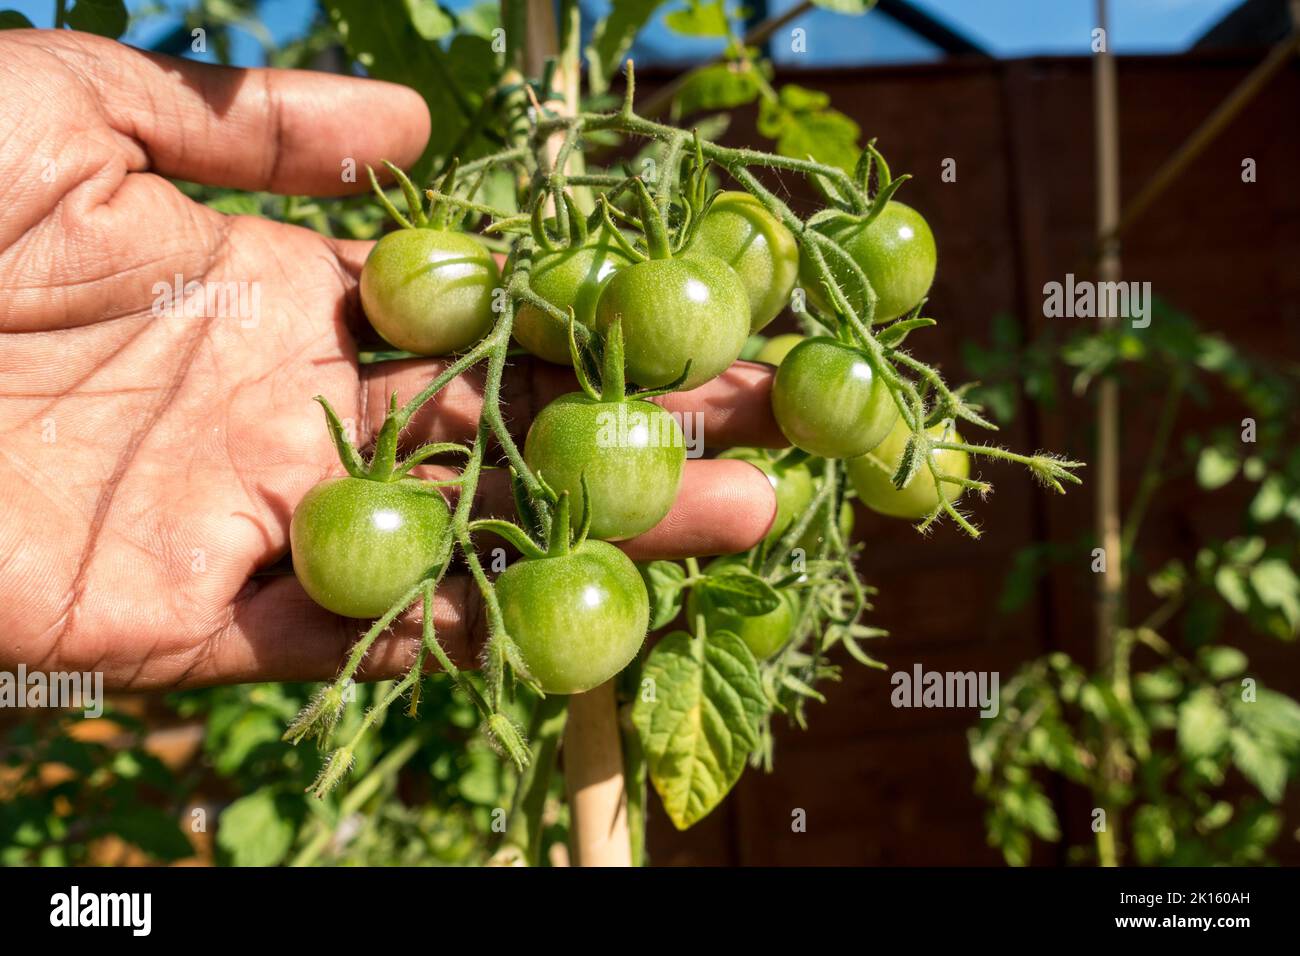 Maschio adulto che tiene un mazzo di pomodori verdi sulla pianta Foto Stock